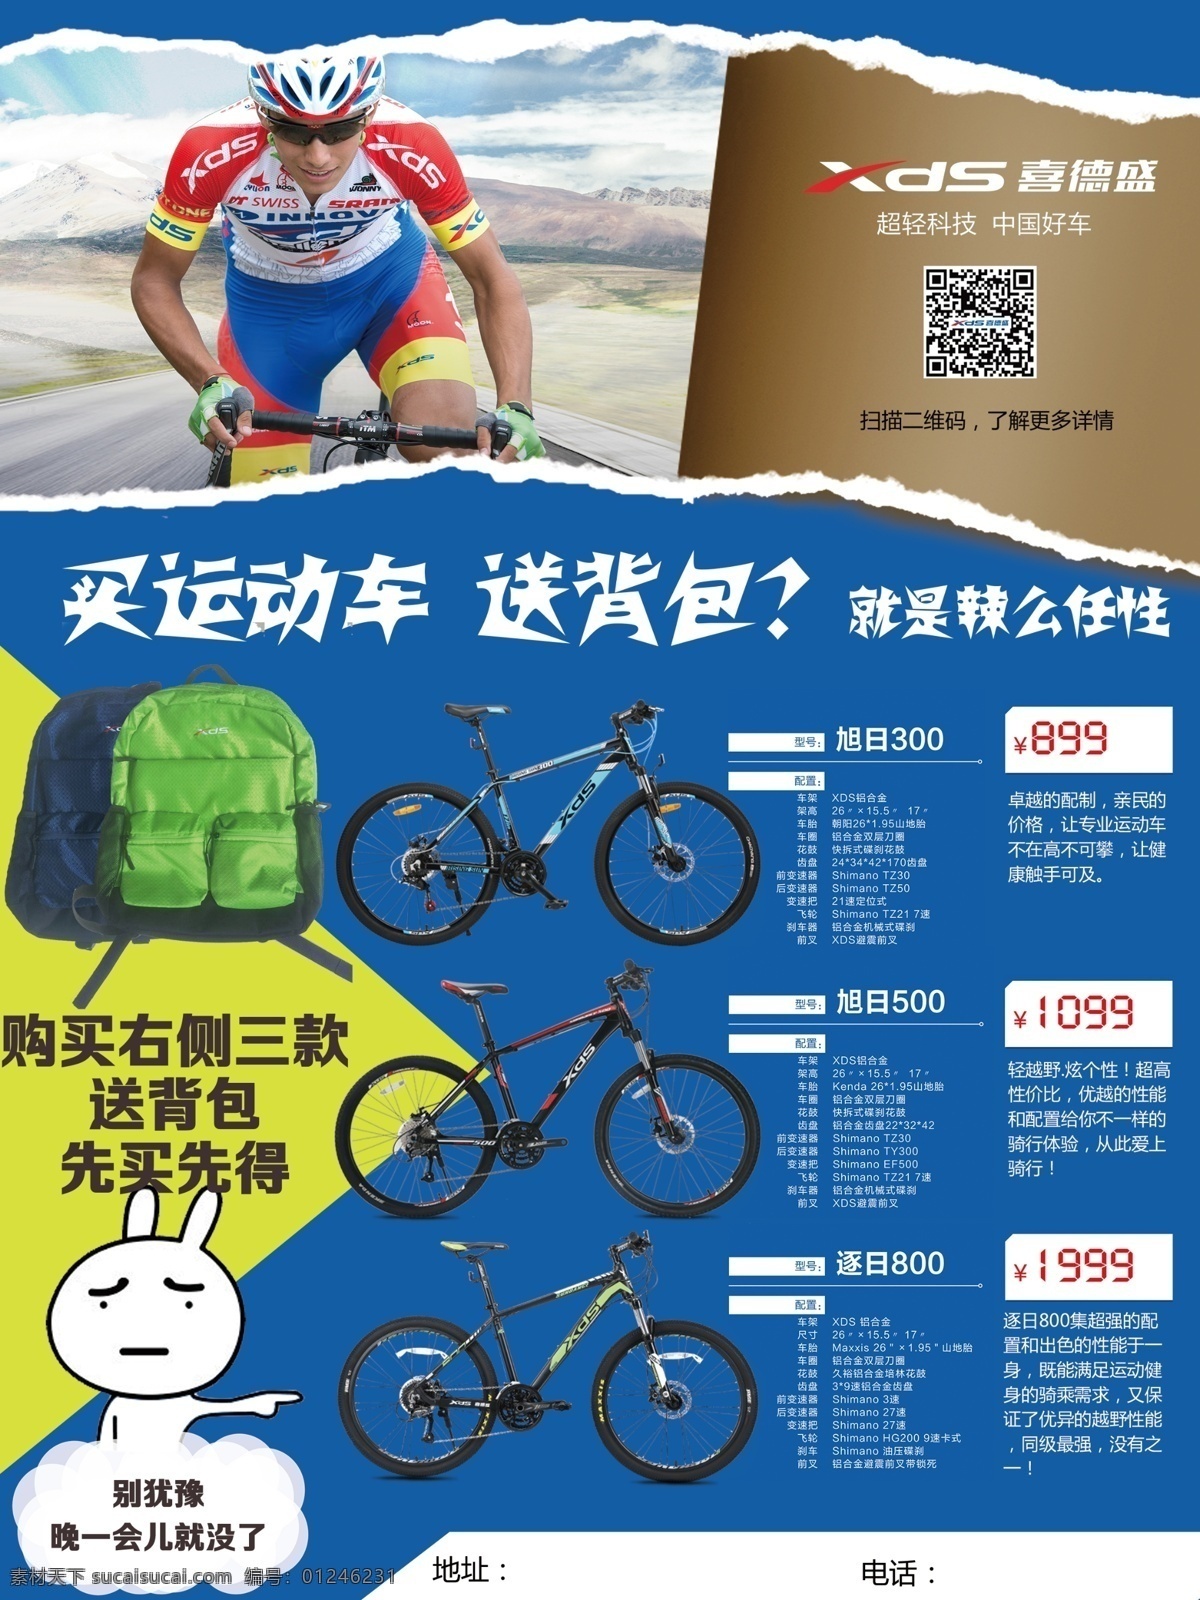 购买 喜德 盛 自行车 送 背包 自行车海报 喜德盛 海报 撕纸效果 送背包